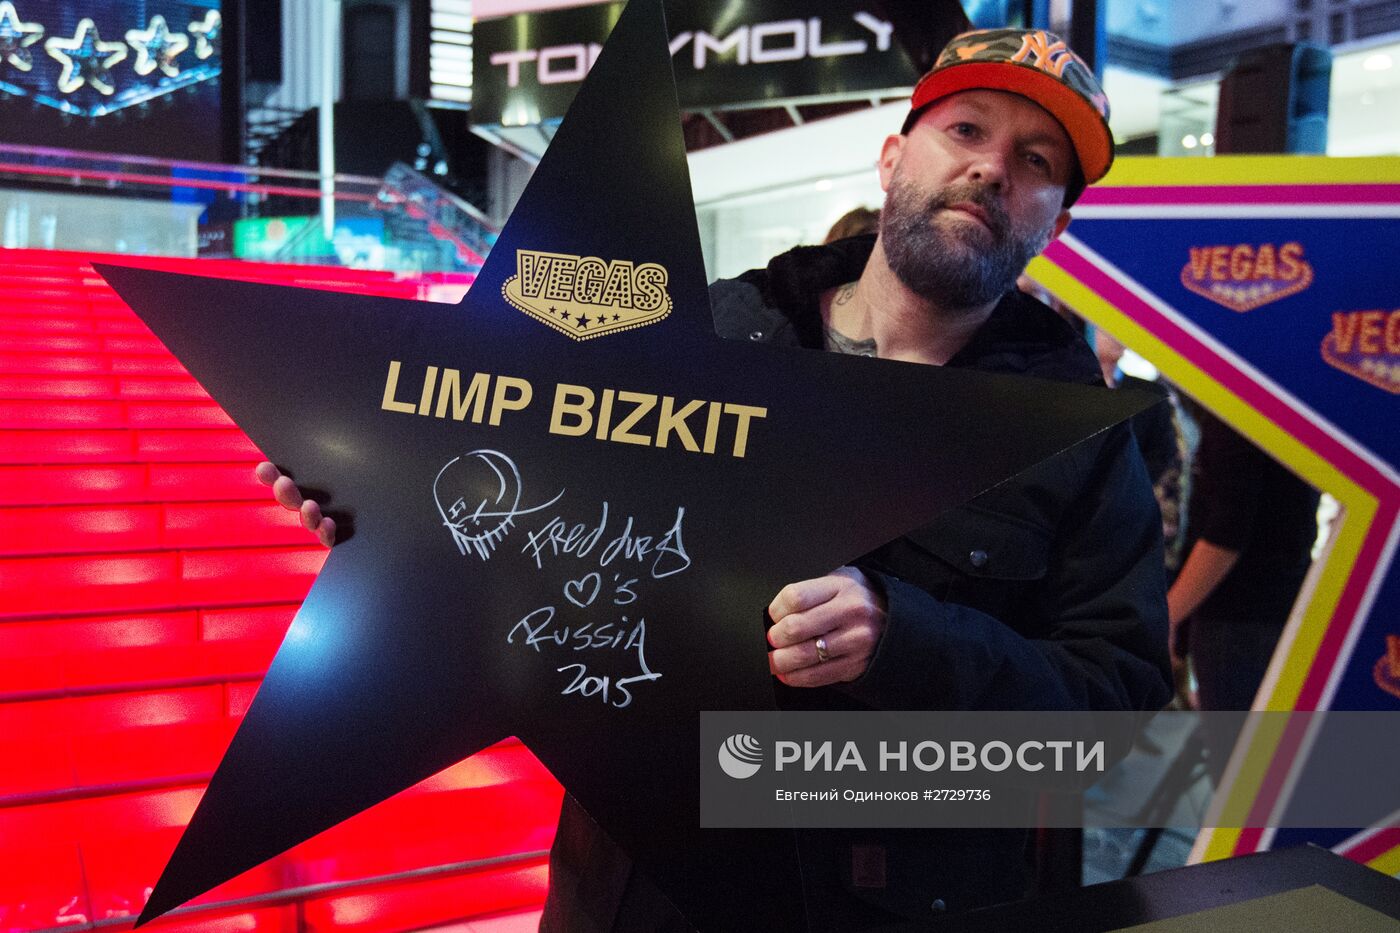 Закладка именной звезды группой Limp Bizkit в Москве